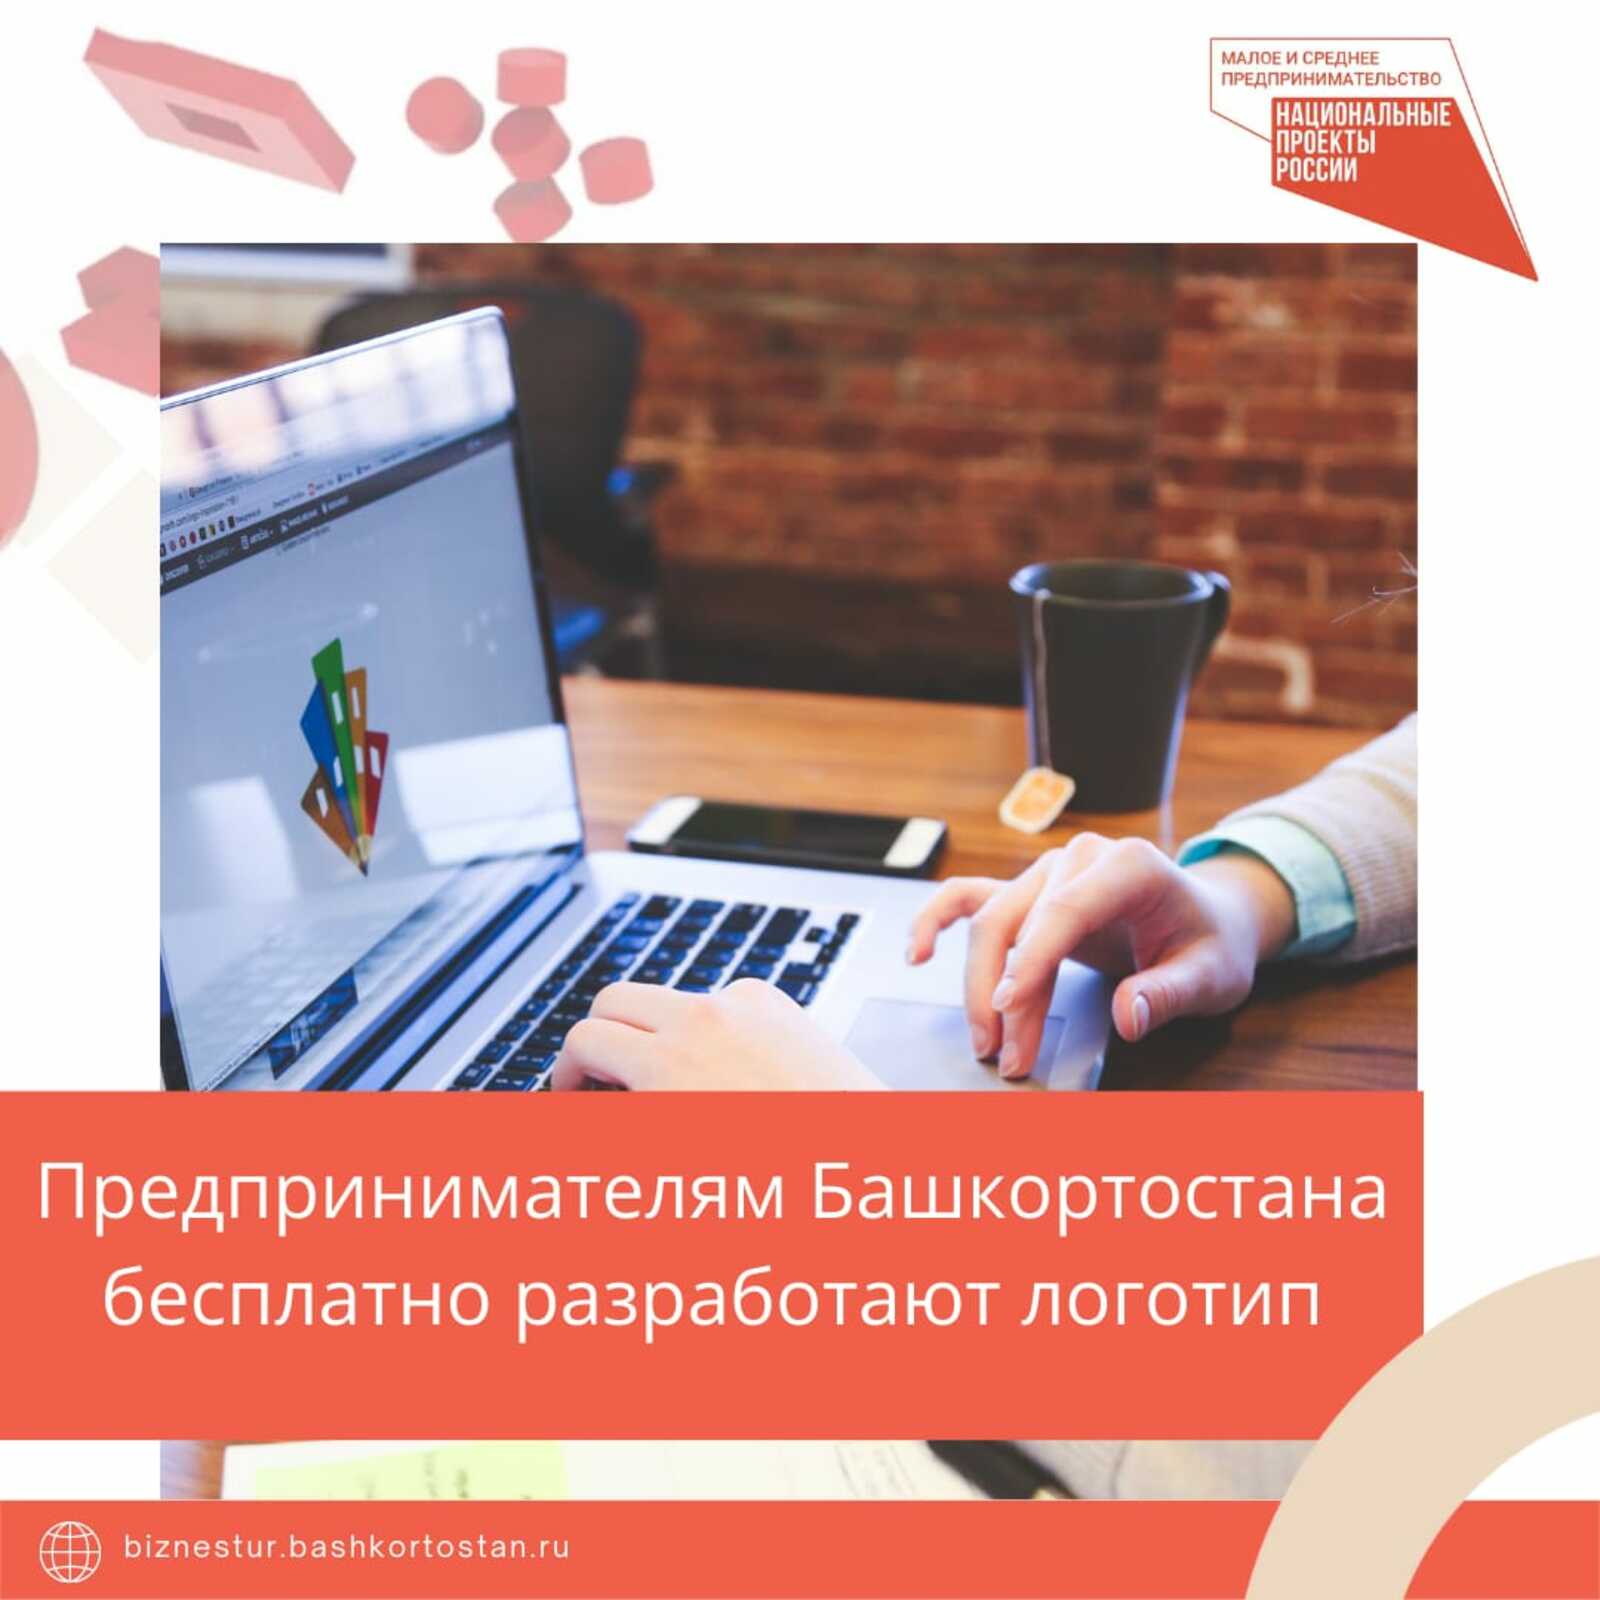 В Башкортостане появилась возможность бесплатно разработать логотип компании в рамках нацпроекта по предпринимательству